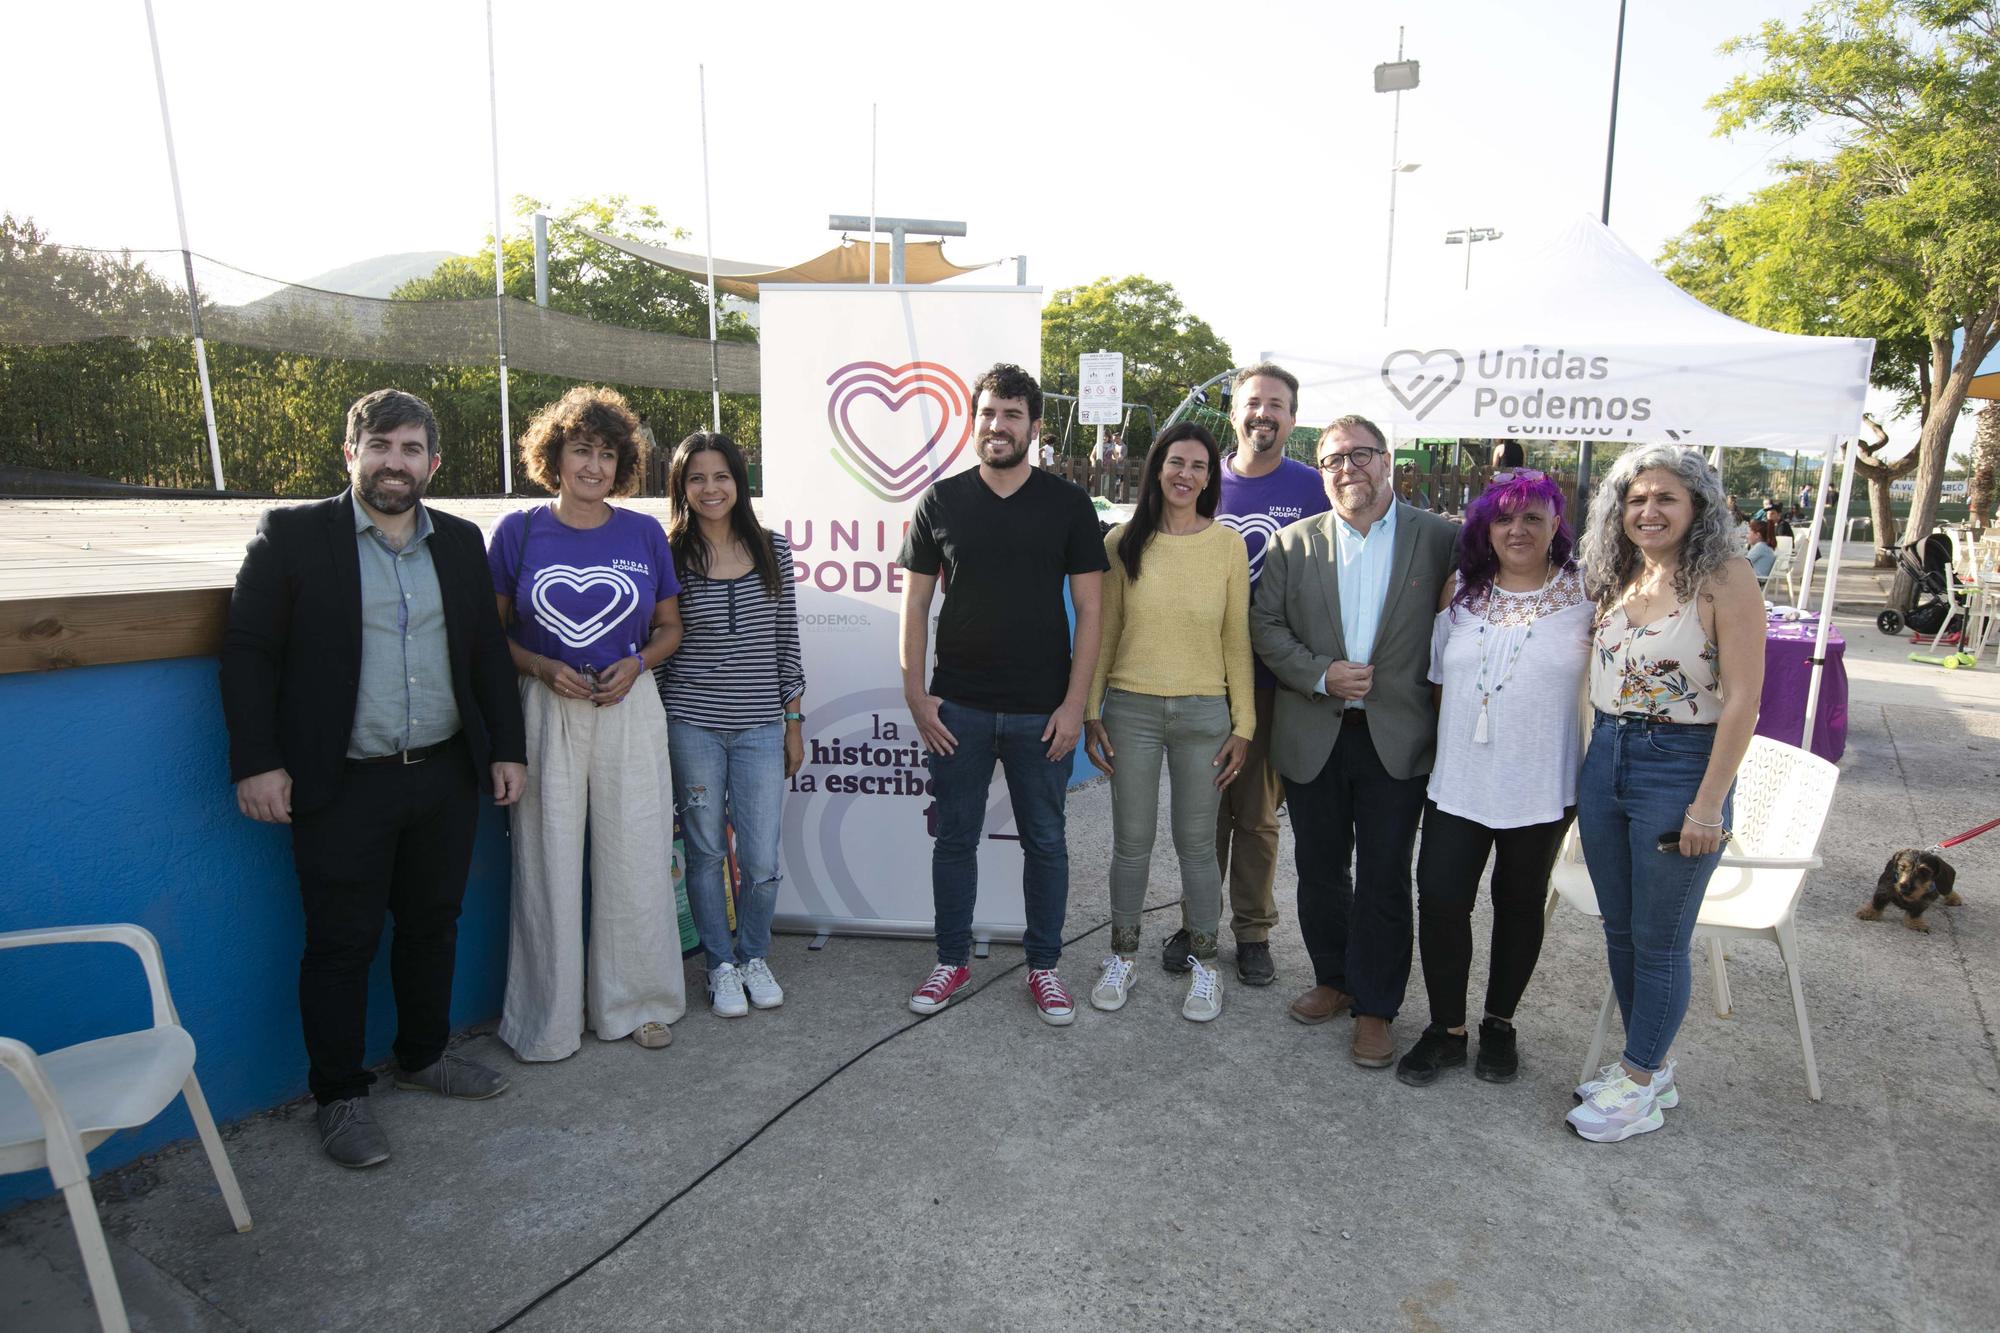 Mira aquí todas las fotos de los actos de cierre de campaña de los partidos políticos en Ibiza